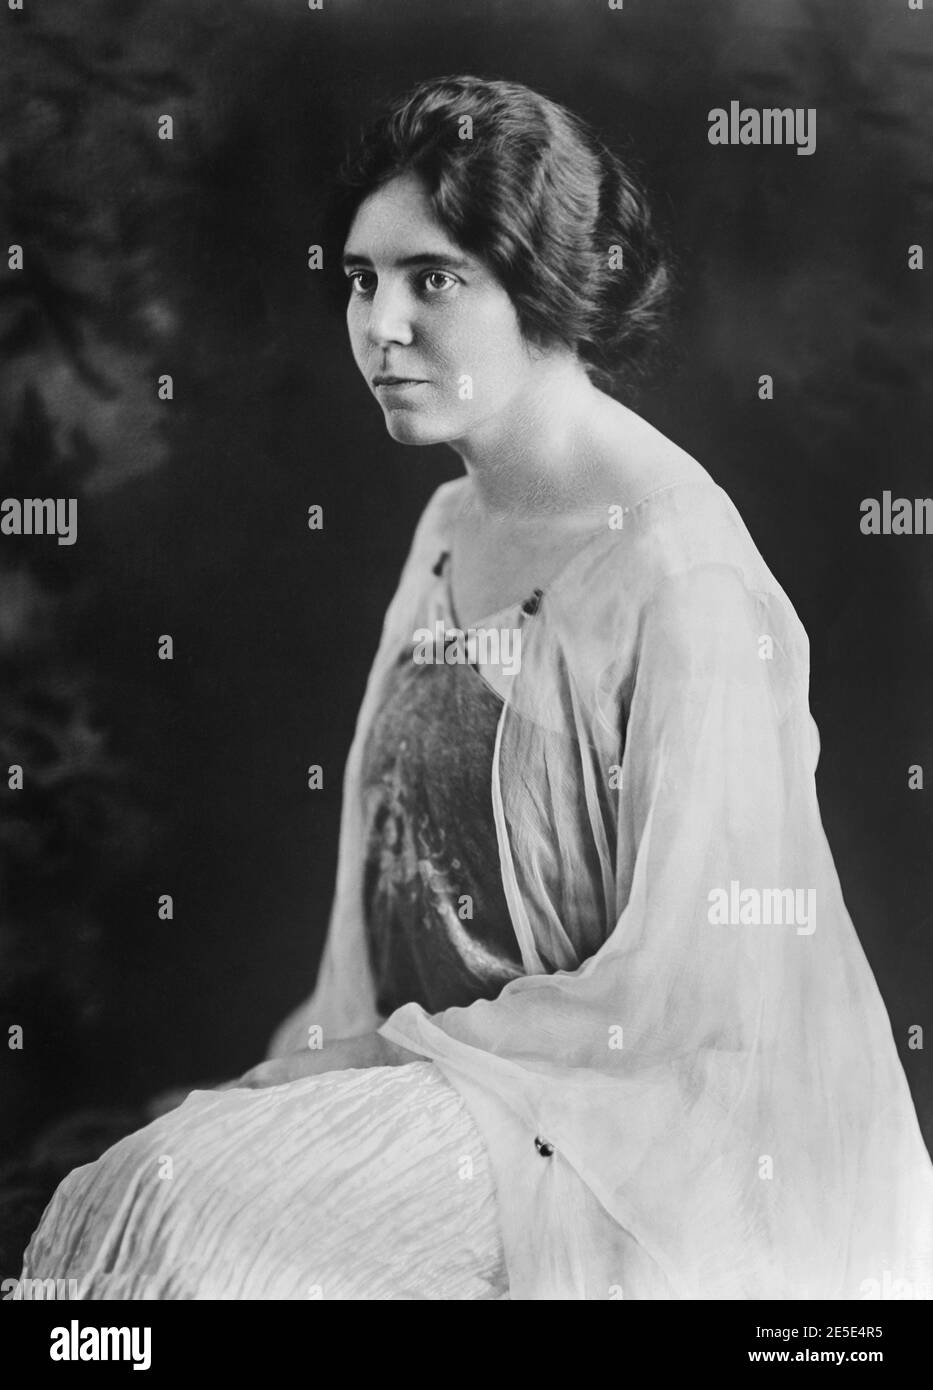 Alice Paul (1885-1977), sufragista estadounidense, feminista y activista por los derechos de las mujeres, Retrato, Underwood, Bain News Service, 1920 Foto de stock